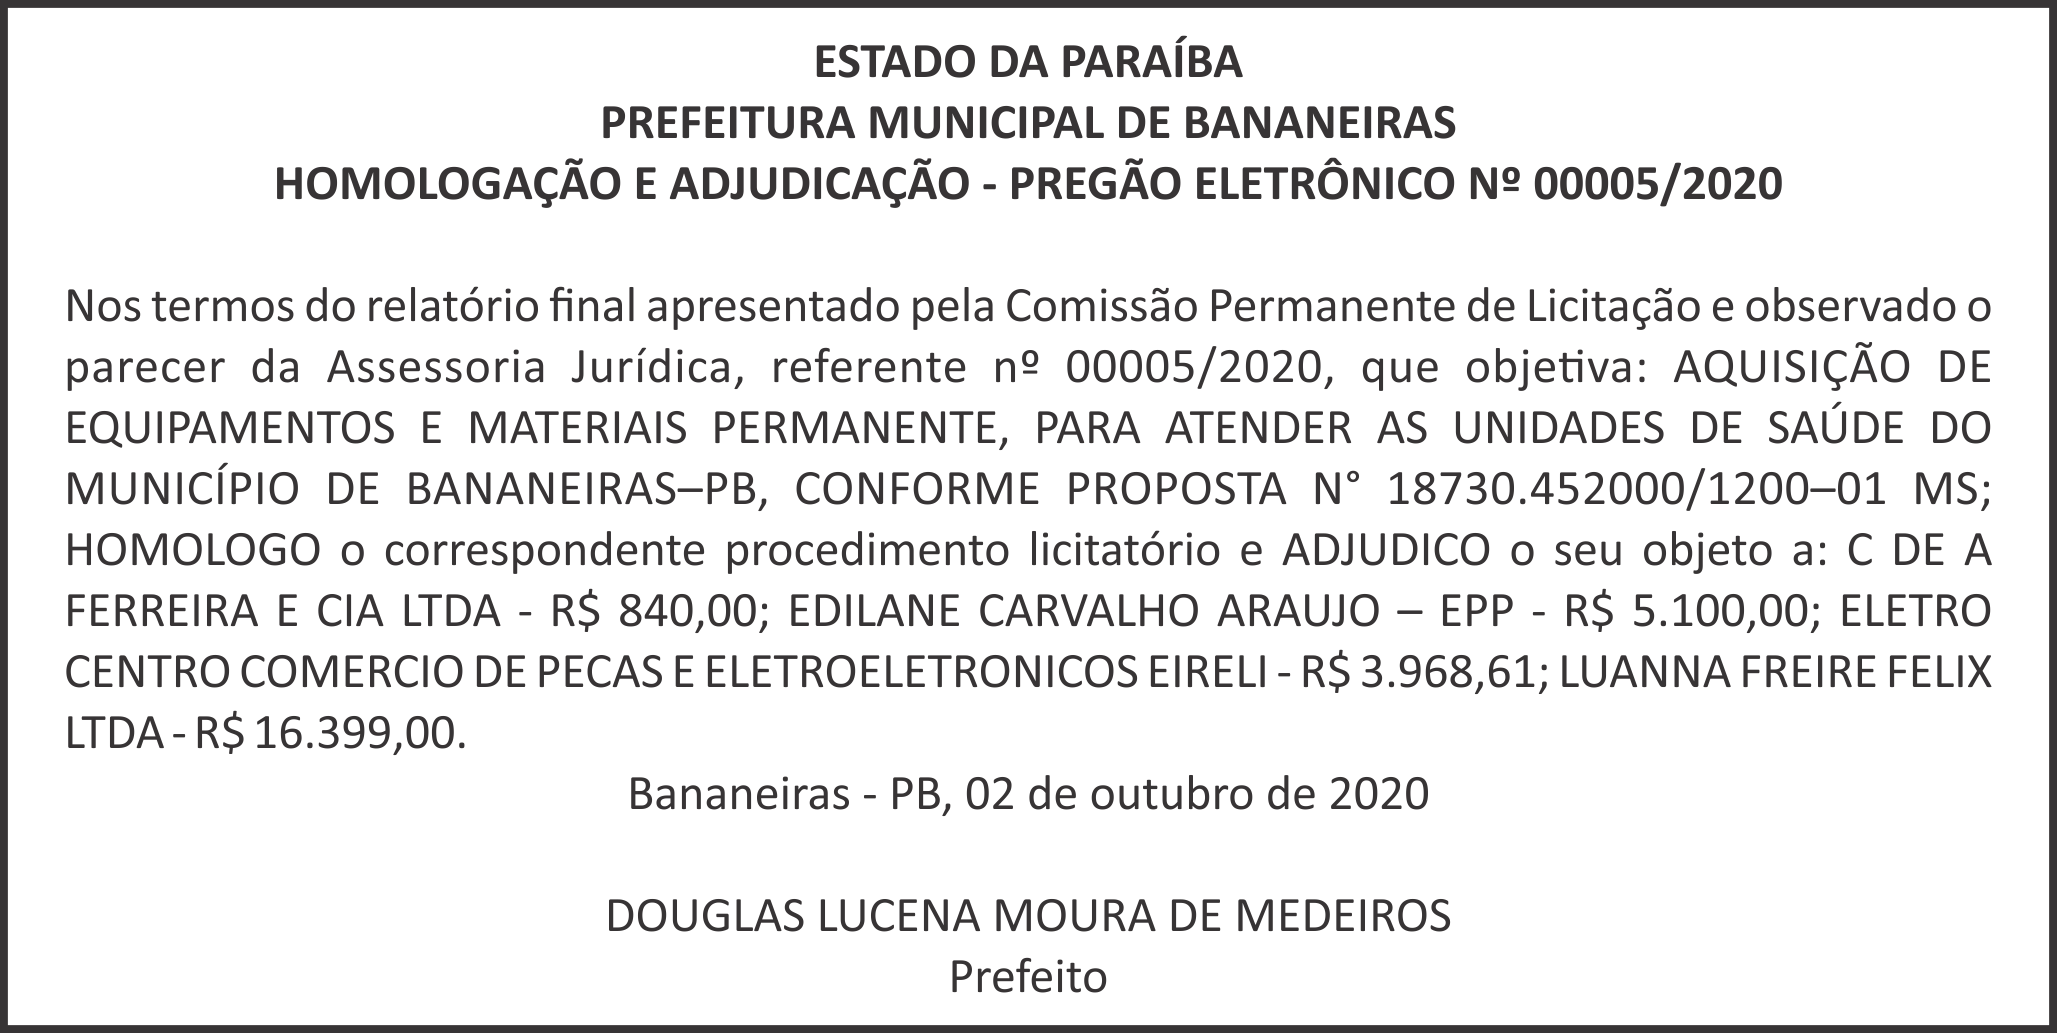 PREFEITURA MUNICIPAL DE BANANEIRAS – HOMOLOGAÇÃO E ADJUDICAÇÃO – PREGÃO ELETRÔNICO Nº 00005/2020